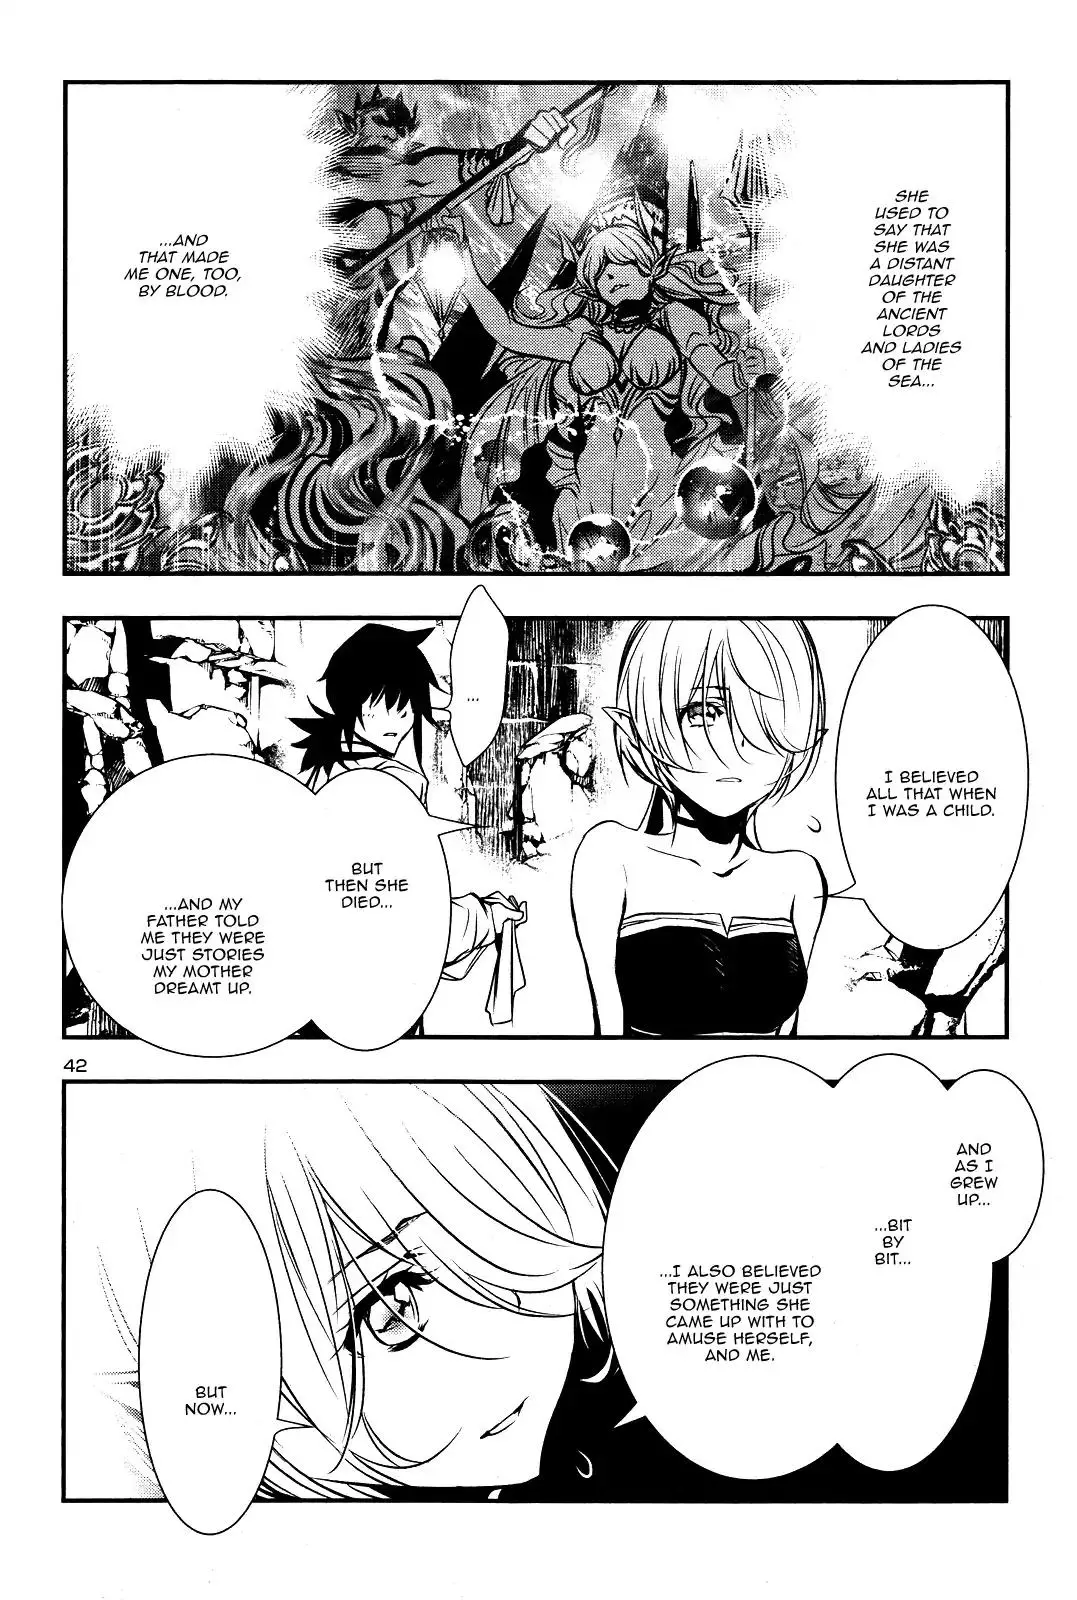 Shinju no Nectar - 16 page 40